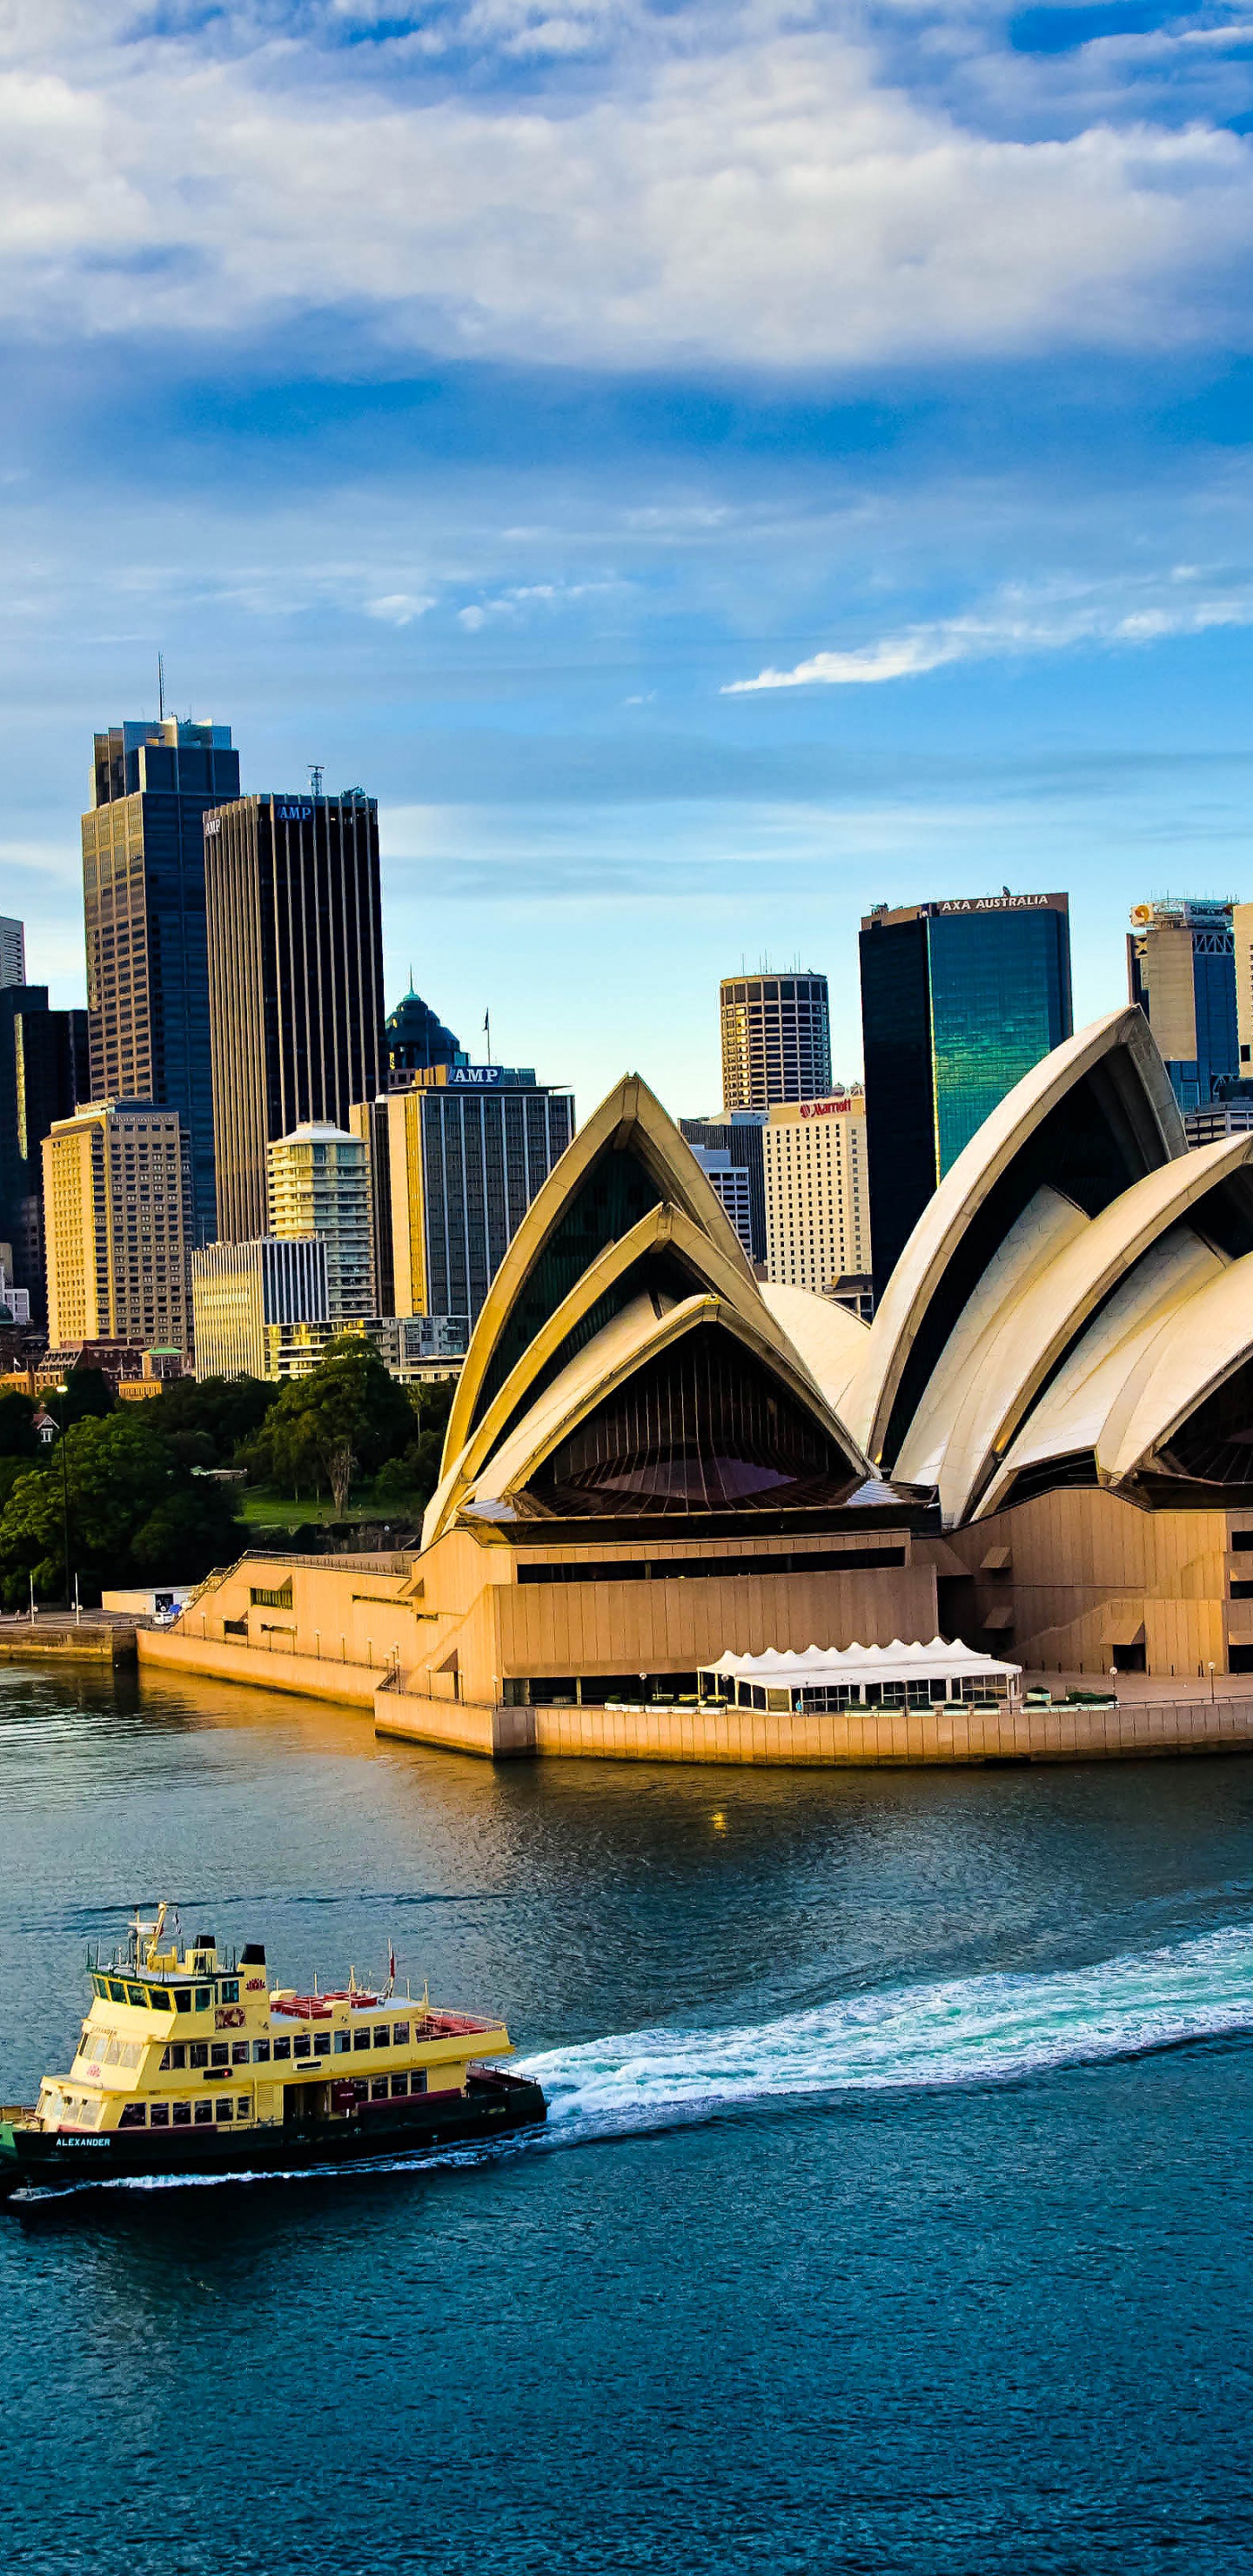 悉尼歌剧院, 歌剧院, 水运, 城市景观, 城市 壁纸 1440x2960 允许